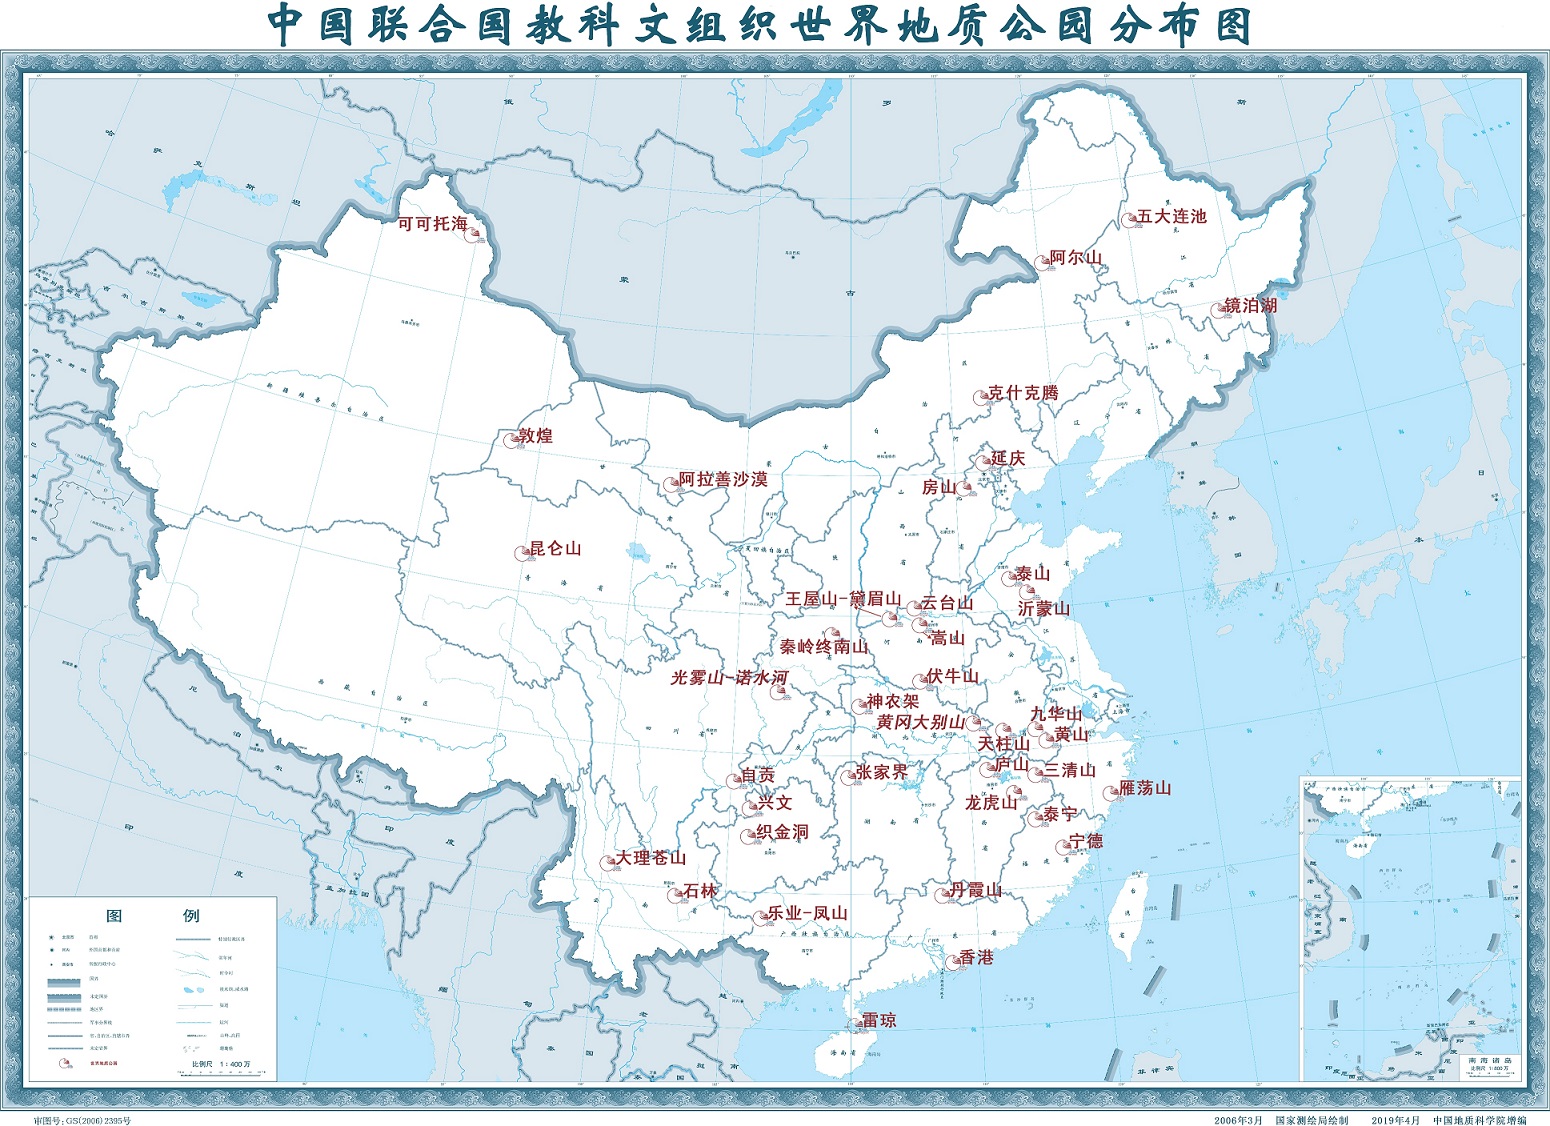 20180411世界地质公园在中国的分布-中 - 简副本.jpg